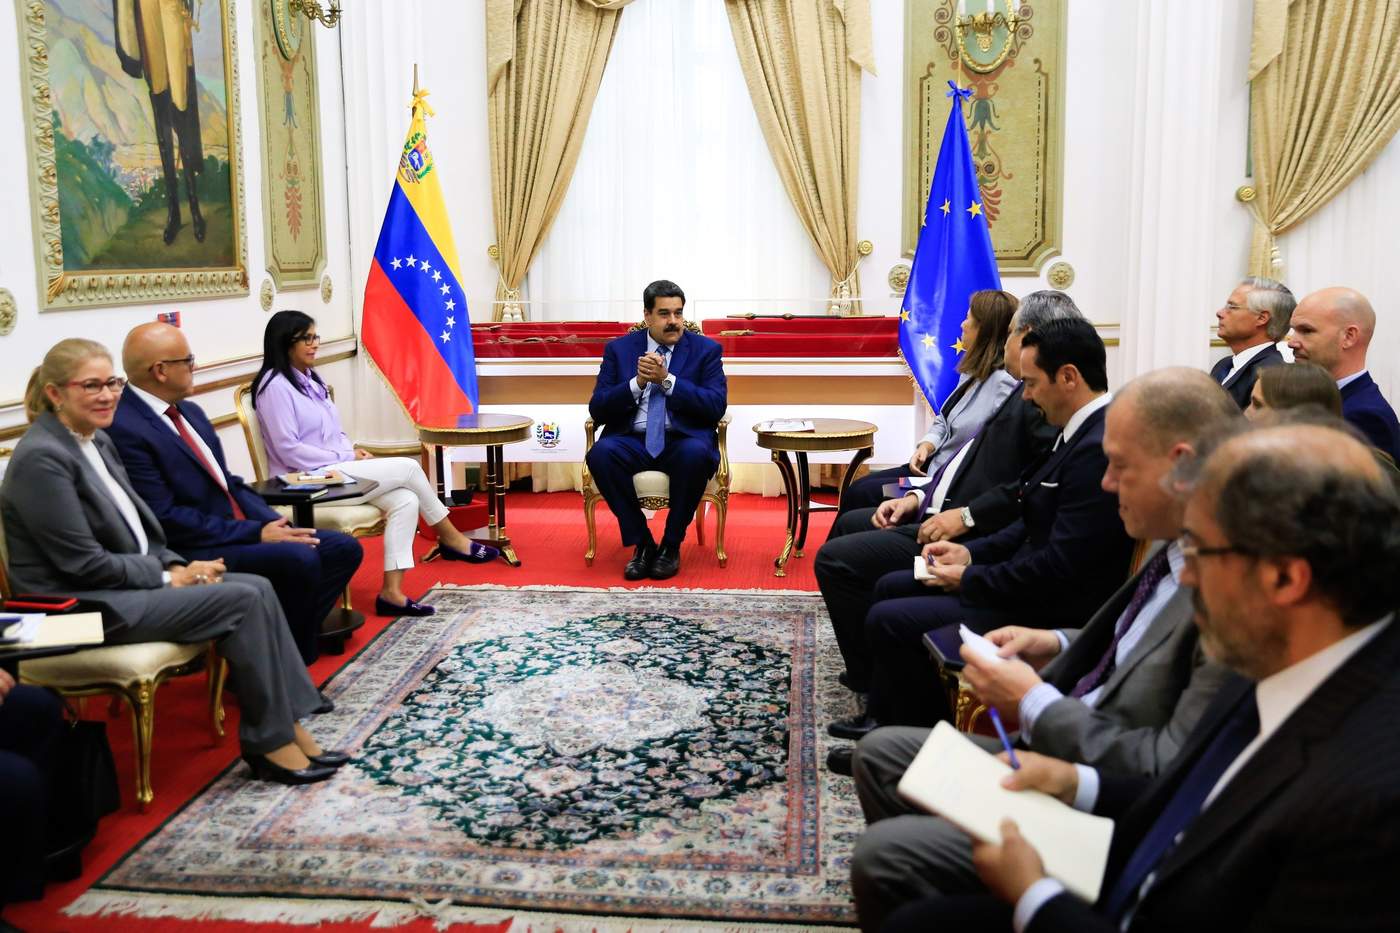 Antes de reunirse con Maduro, la delegación fue recibida por el canciller venezolano, Jorge Arreaza, según mostraron las mismas imágenes. (EFE)